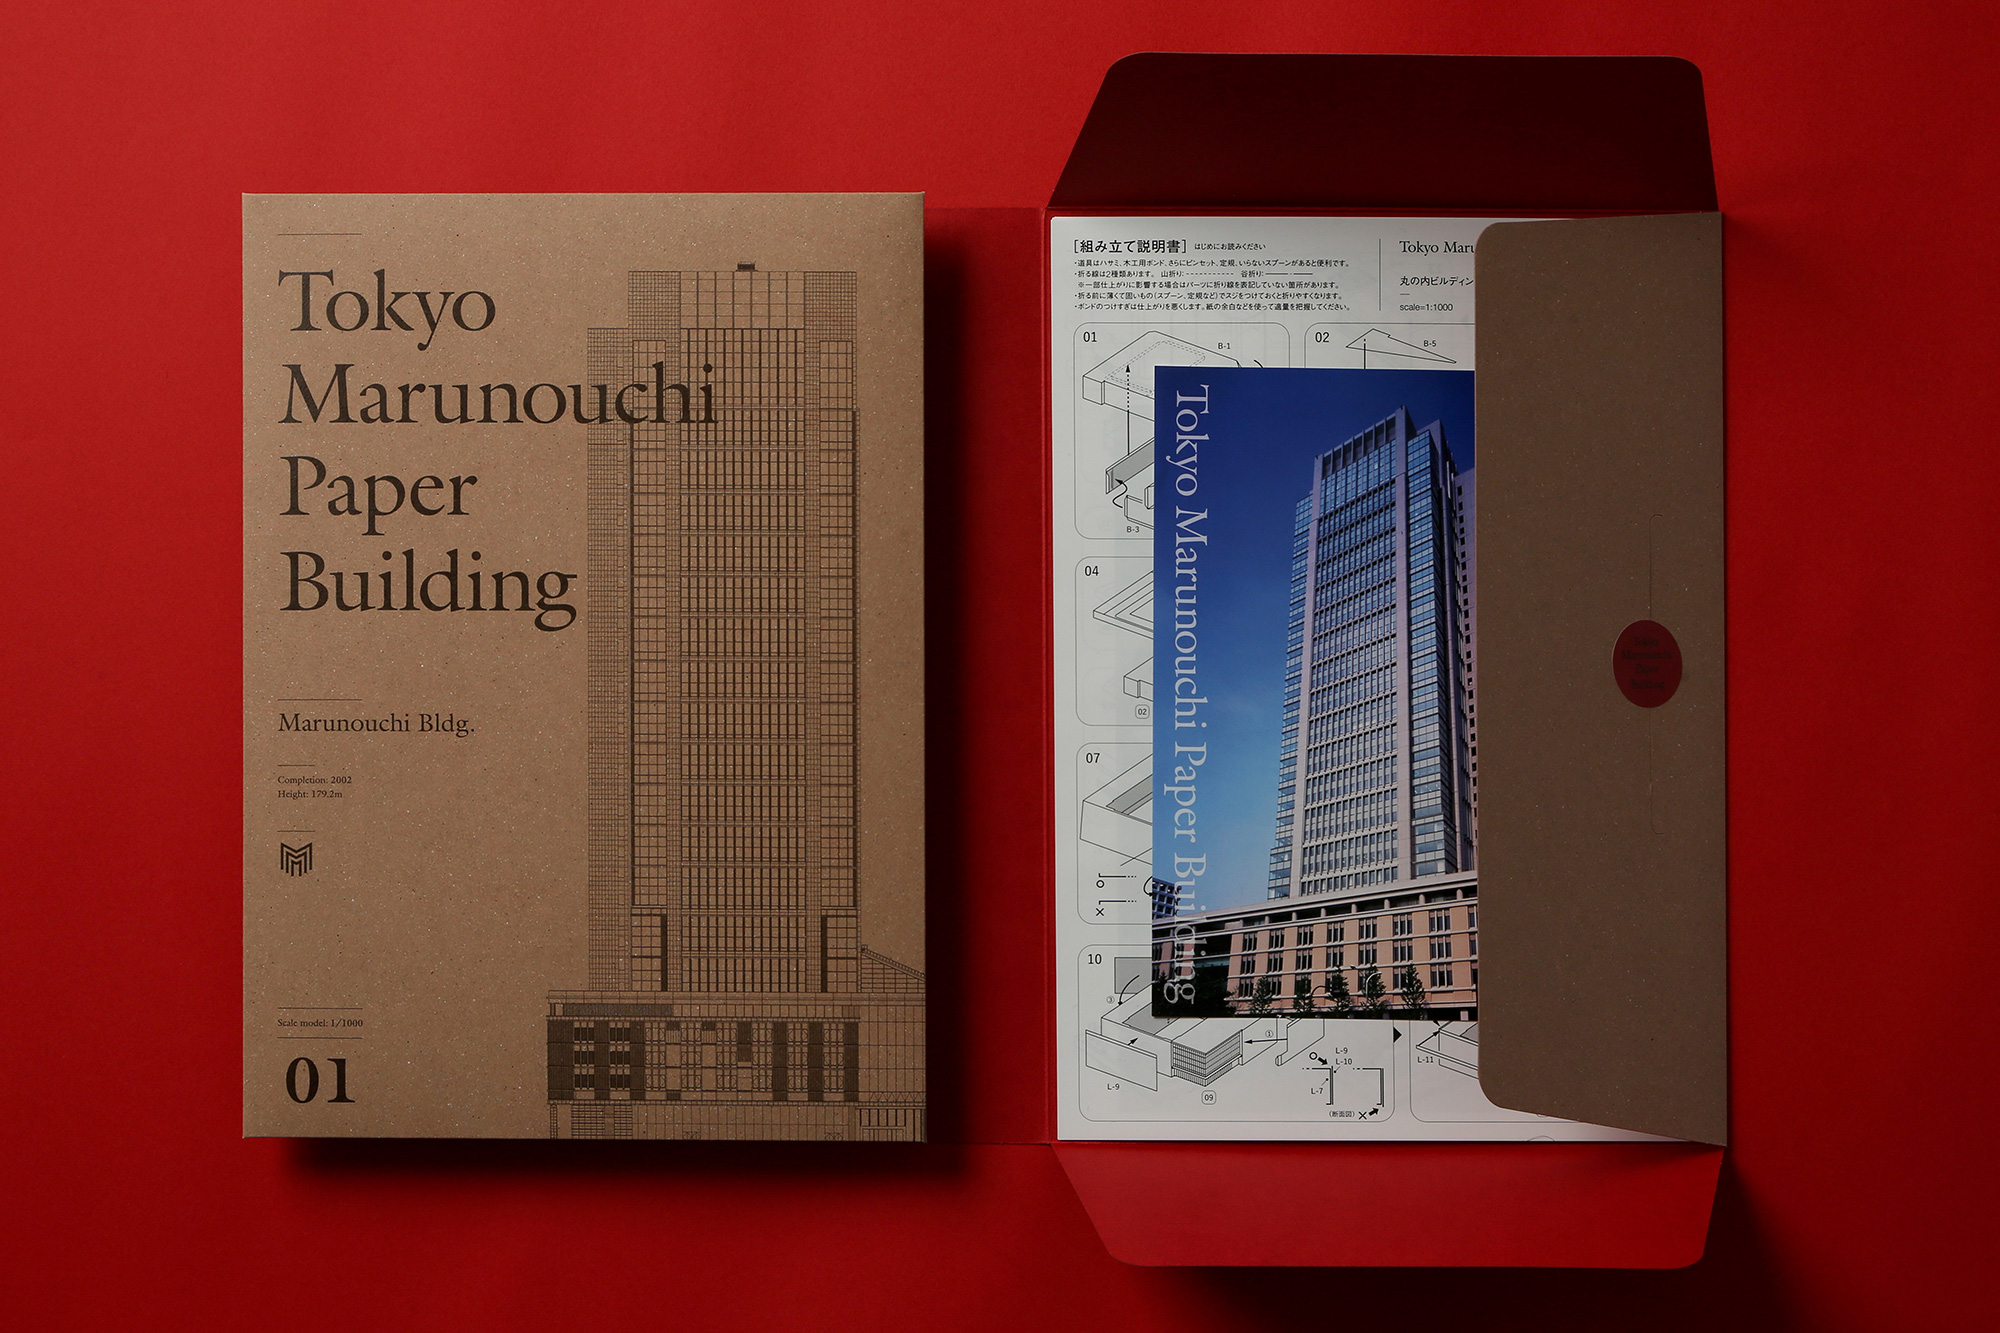 Tokyo Marunouchi Paper Building